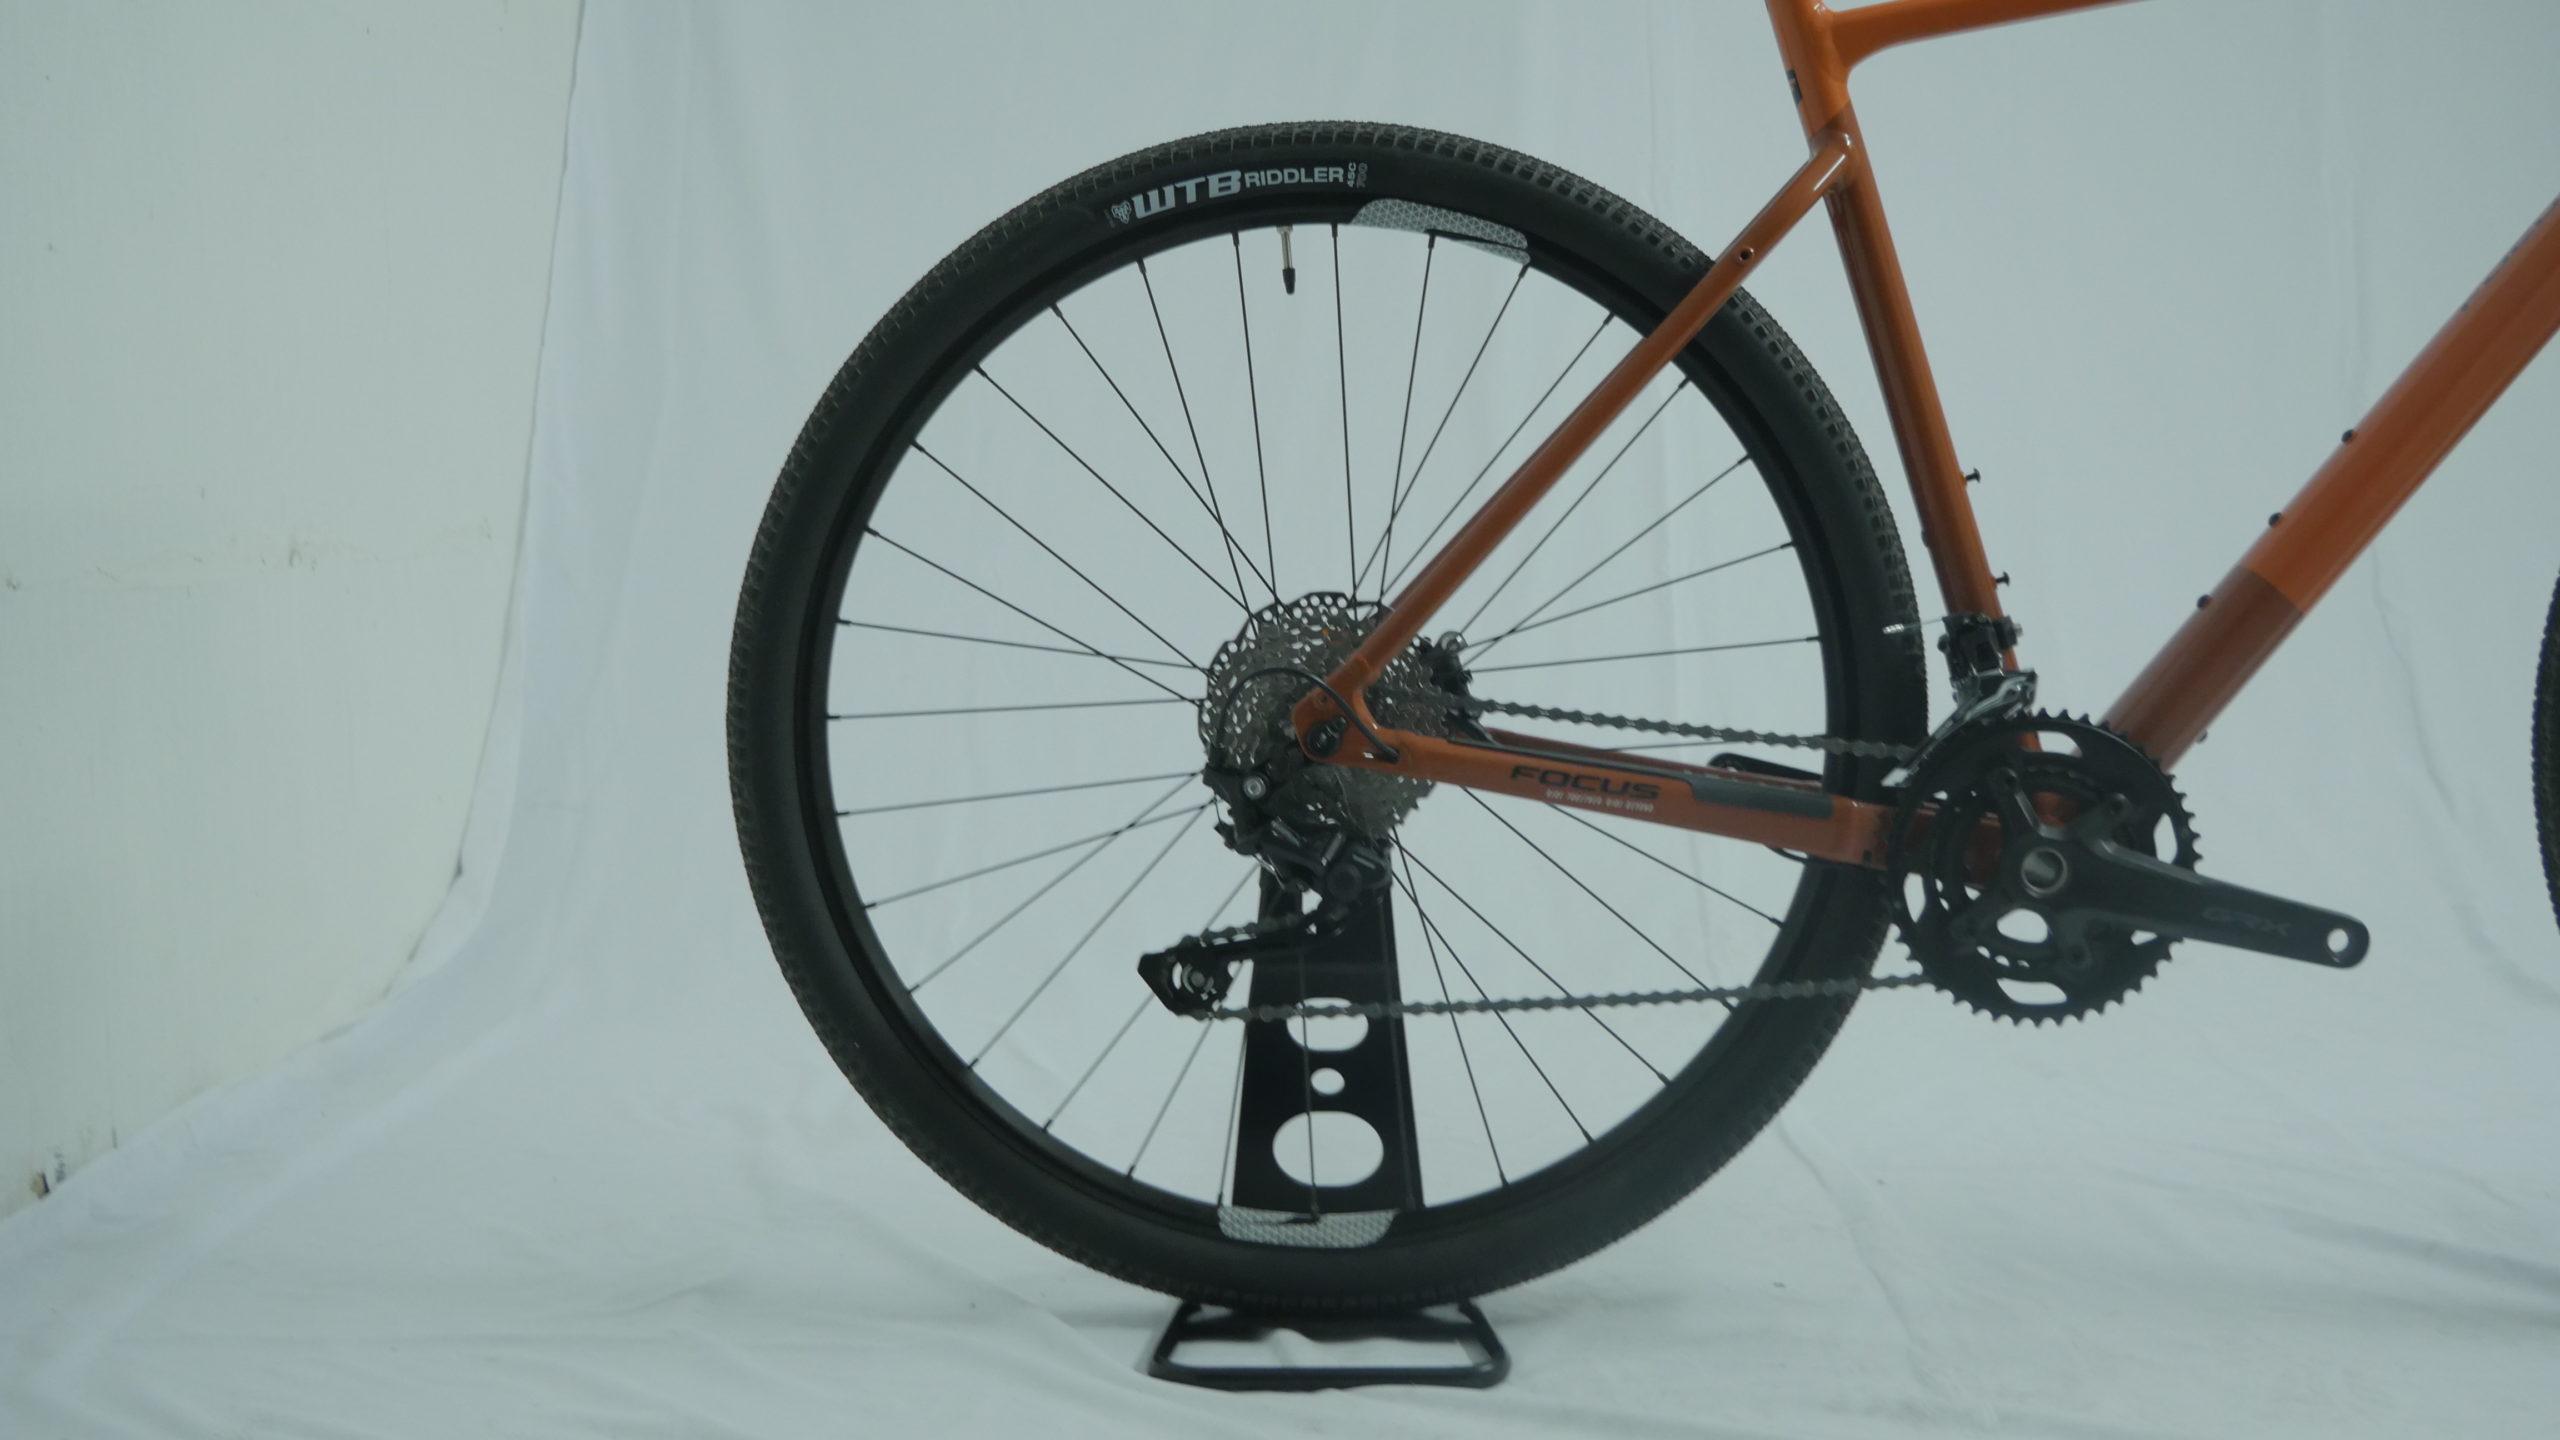 Vélo de gravel Focus Atlas 6.7 Shimano GRX Orange